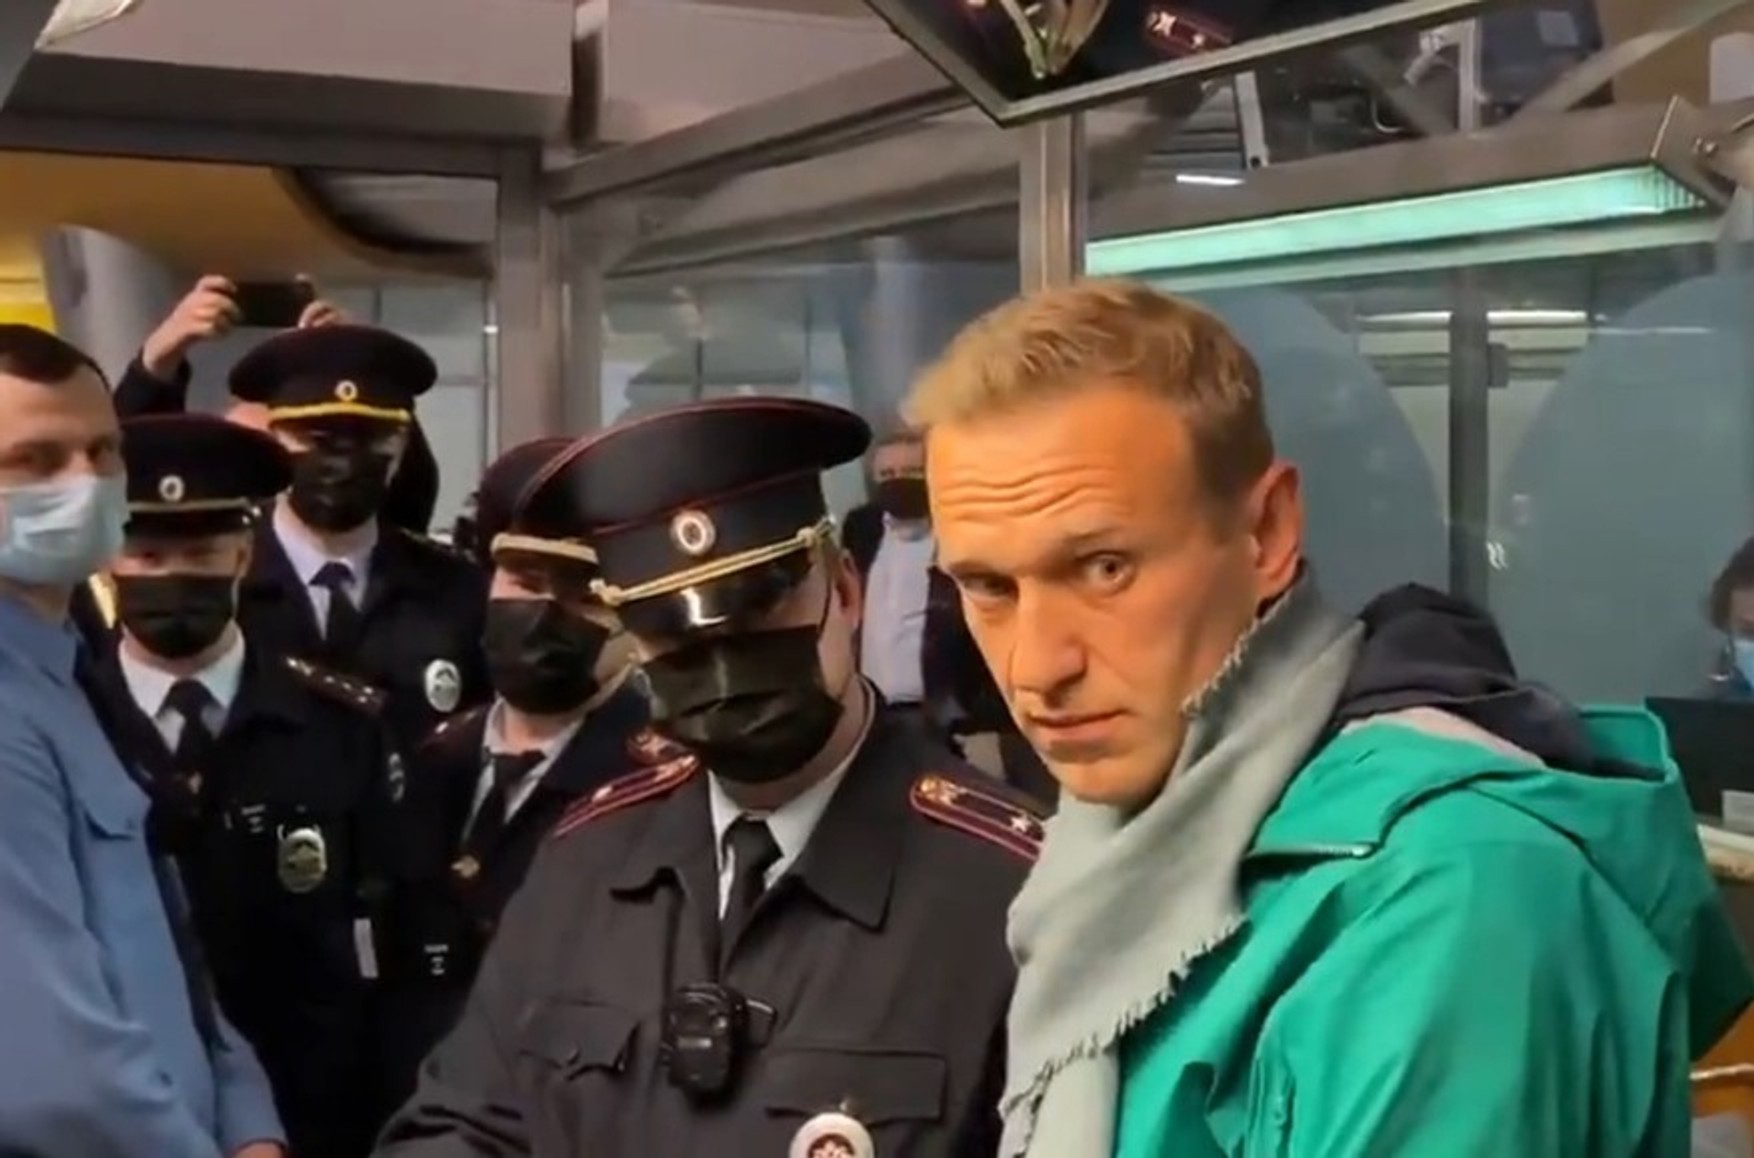 Олексій Навальний буде відправлений у СІЗО в Зеленограді - член ОНК Москви Меркачева